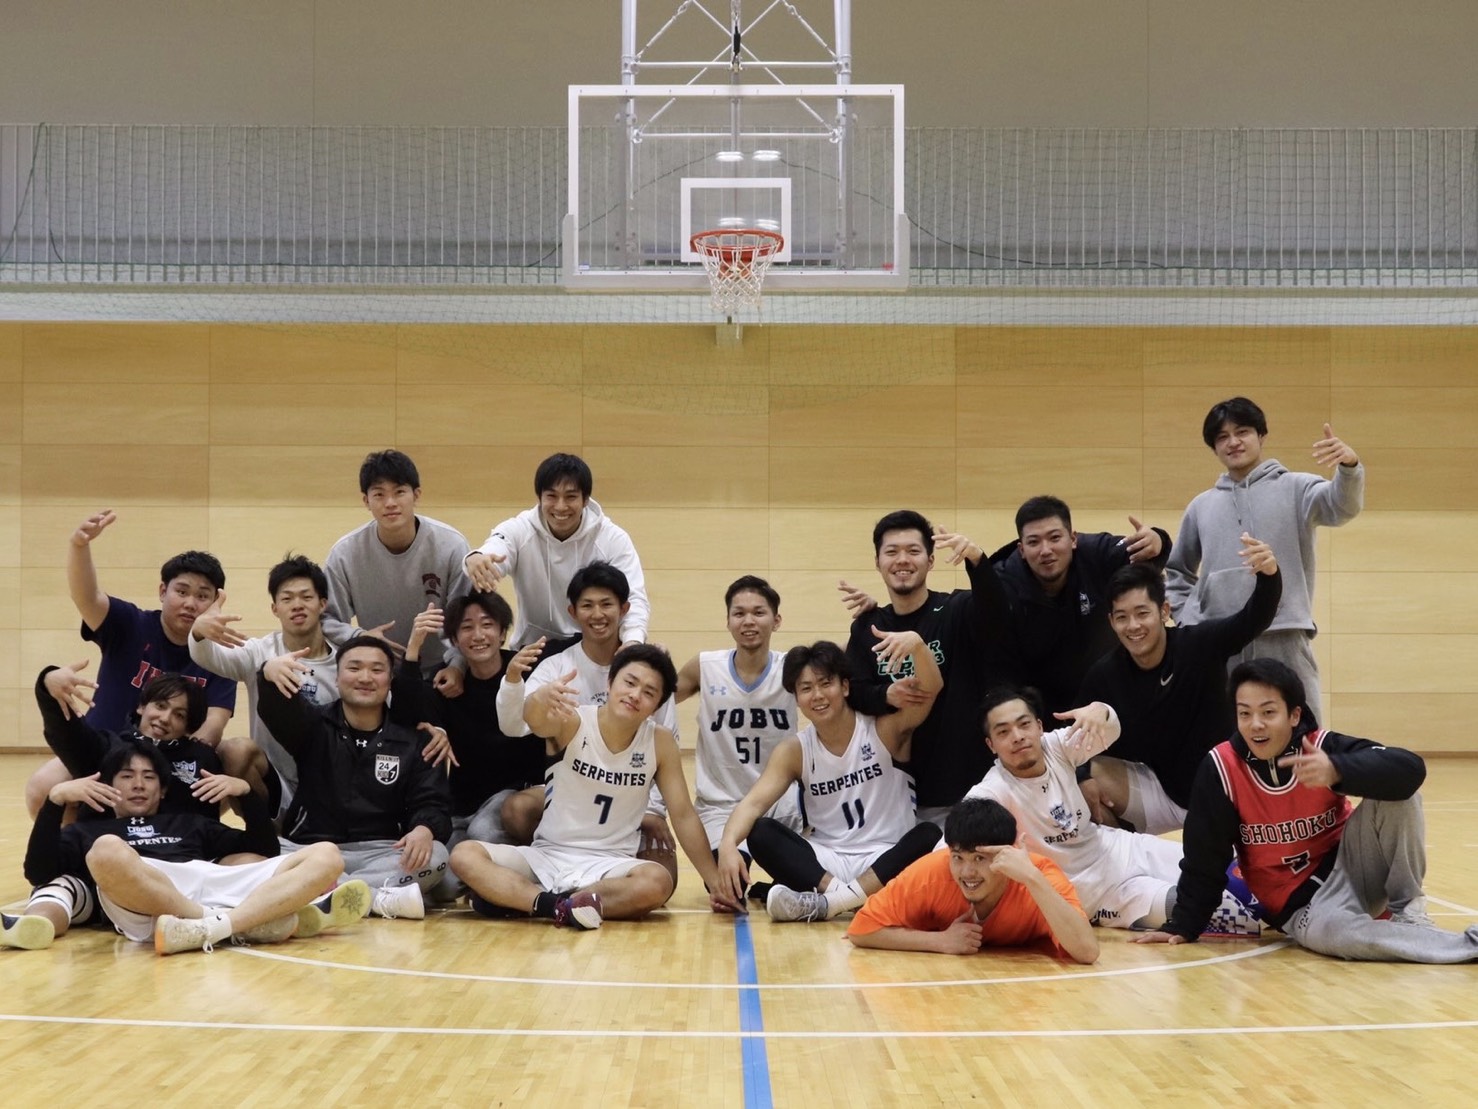 上武大学男子バスケットボール部の画像